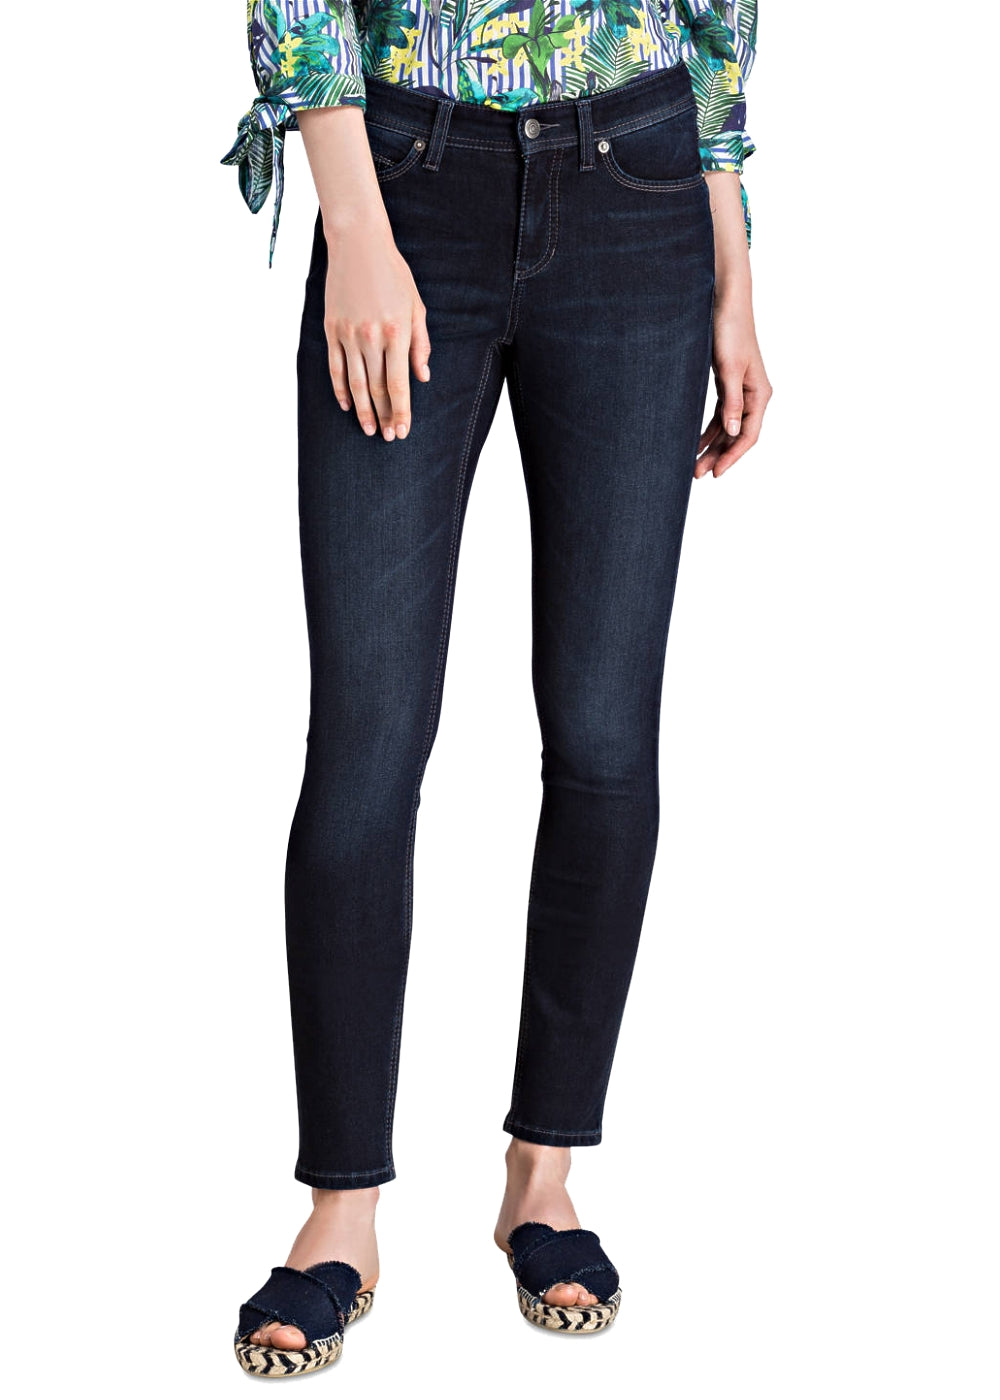 Cambio Jeans Parla in denim blau. Slim fit 5-Pocket Hose in weicher 360 Komfort Denim Ware online kaufen. Parla Jeans in denim blau mit normaler Länge und Taille aus der neuen Cambio Kollektion.